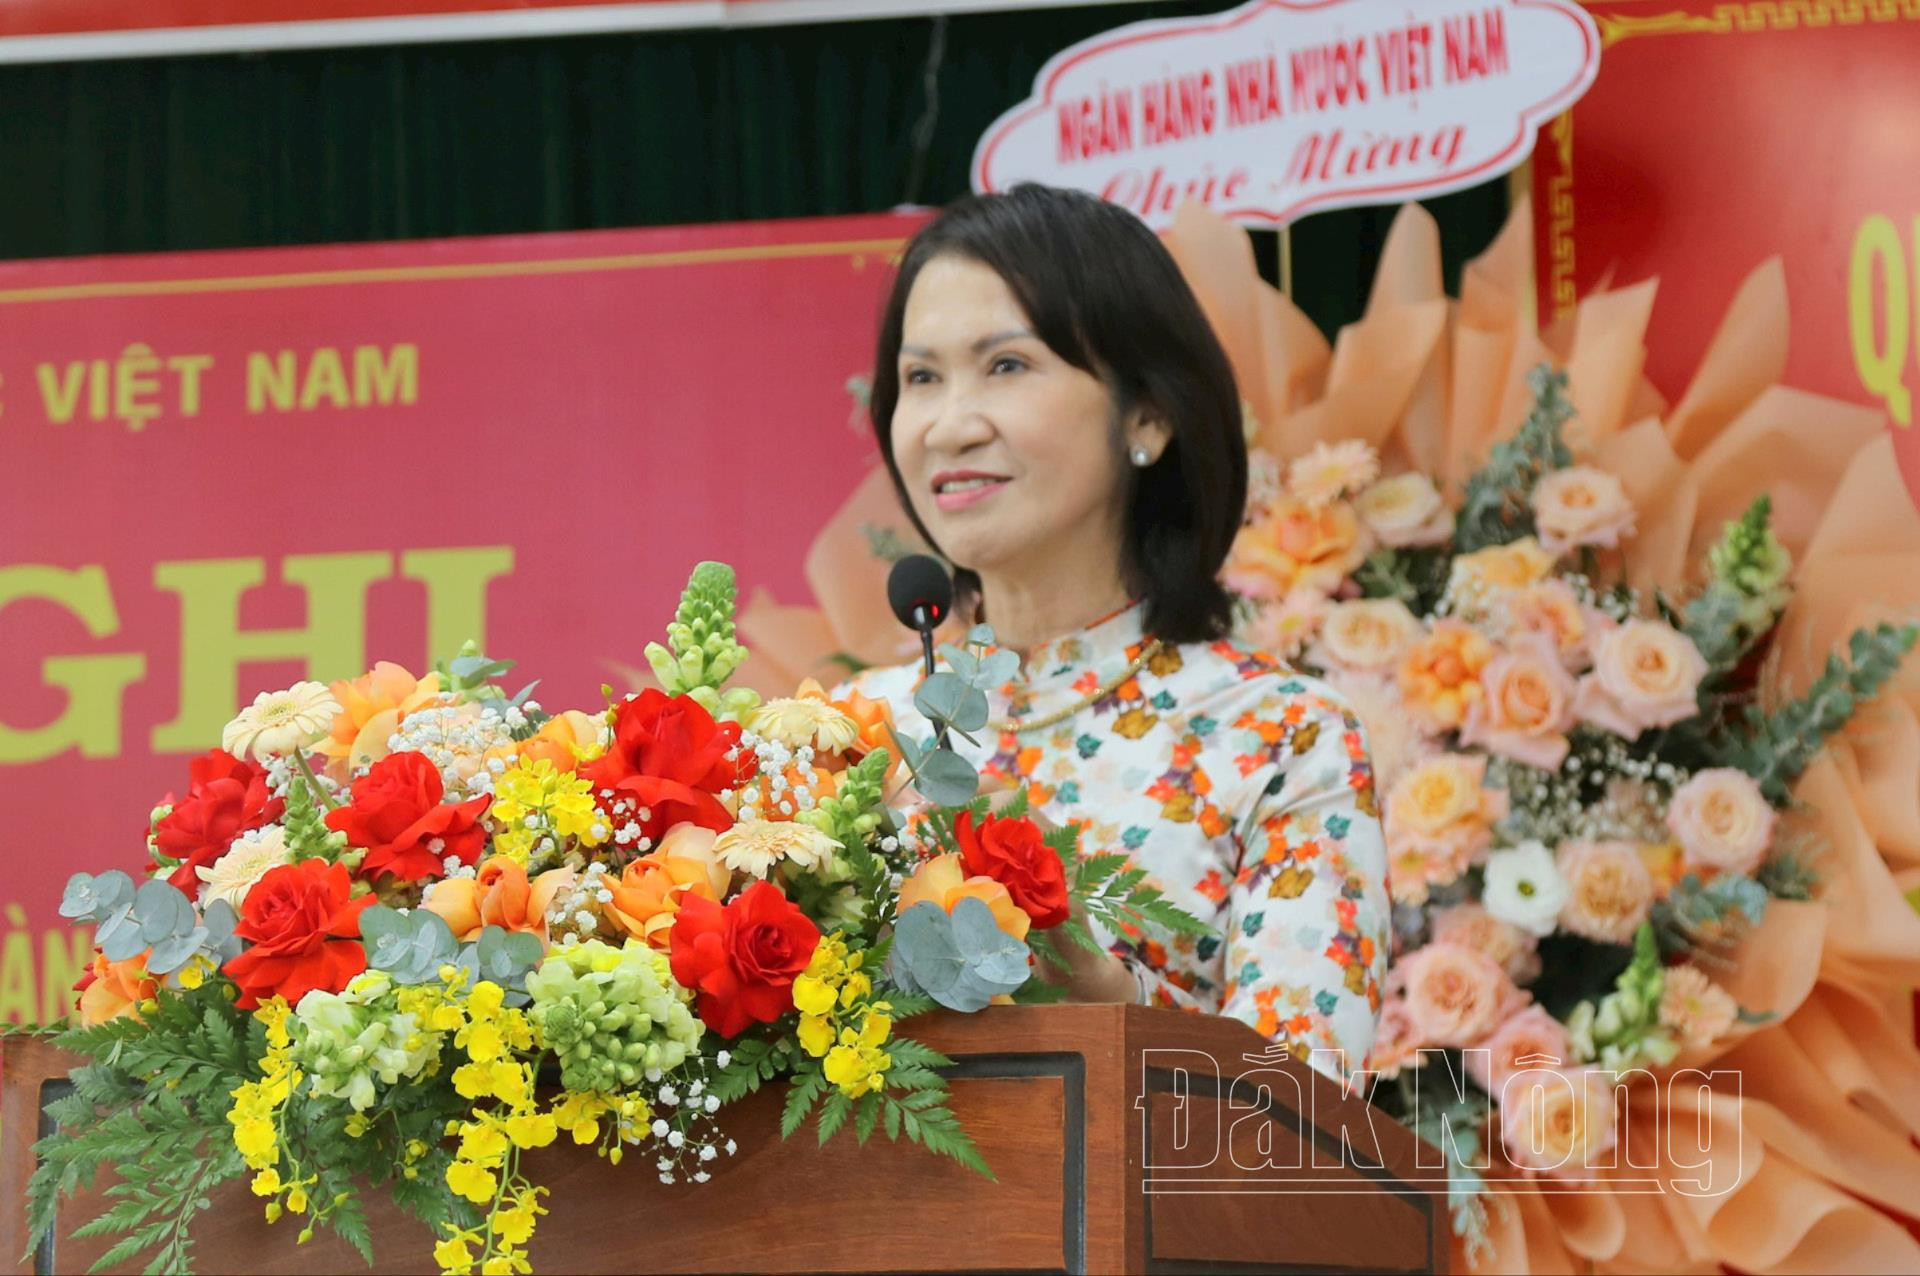 Phó Chủ tịch UBND tỉnh Đắk Nông Tôn Thị Ngọc Hạnh kỳ vọng trên cương vị mới, ông Nguyễn Thanh Tình sẽ tạo sự bứt phát mới cho hệ thống ngân hàng ở Đắk Nông